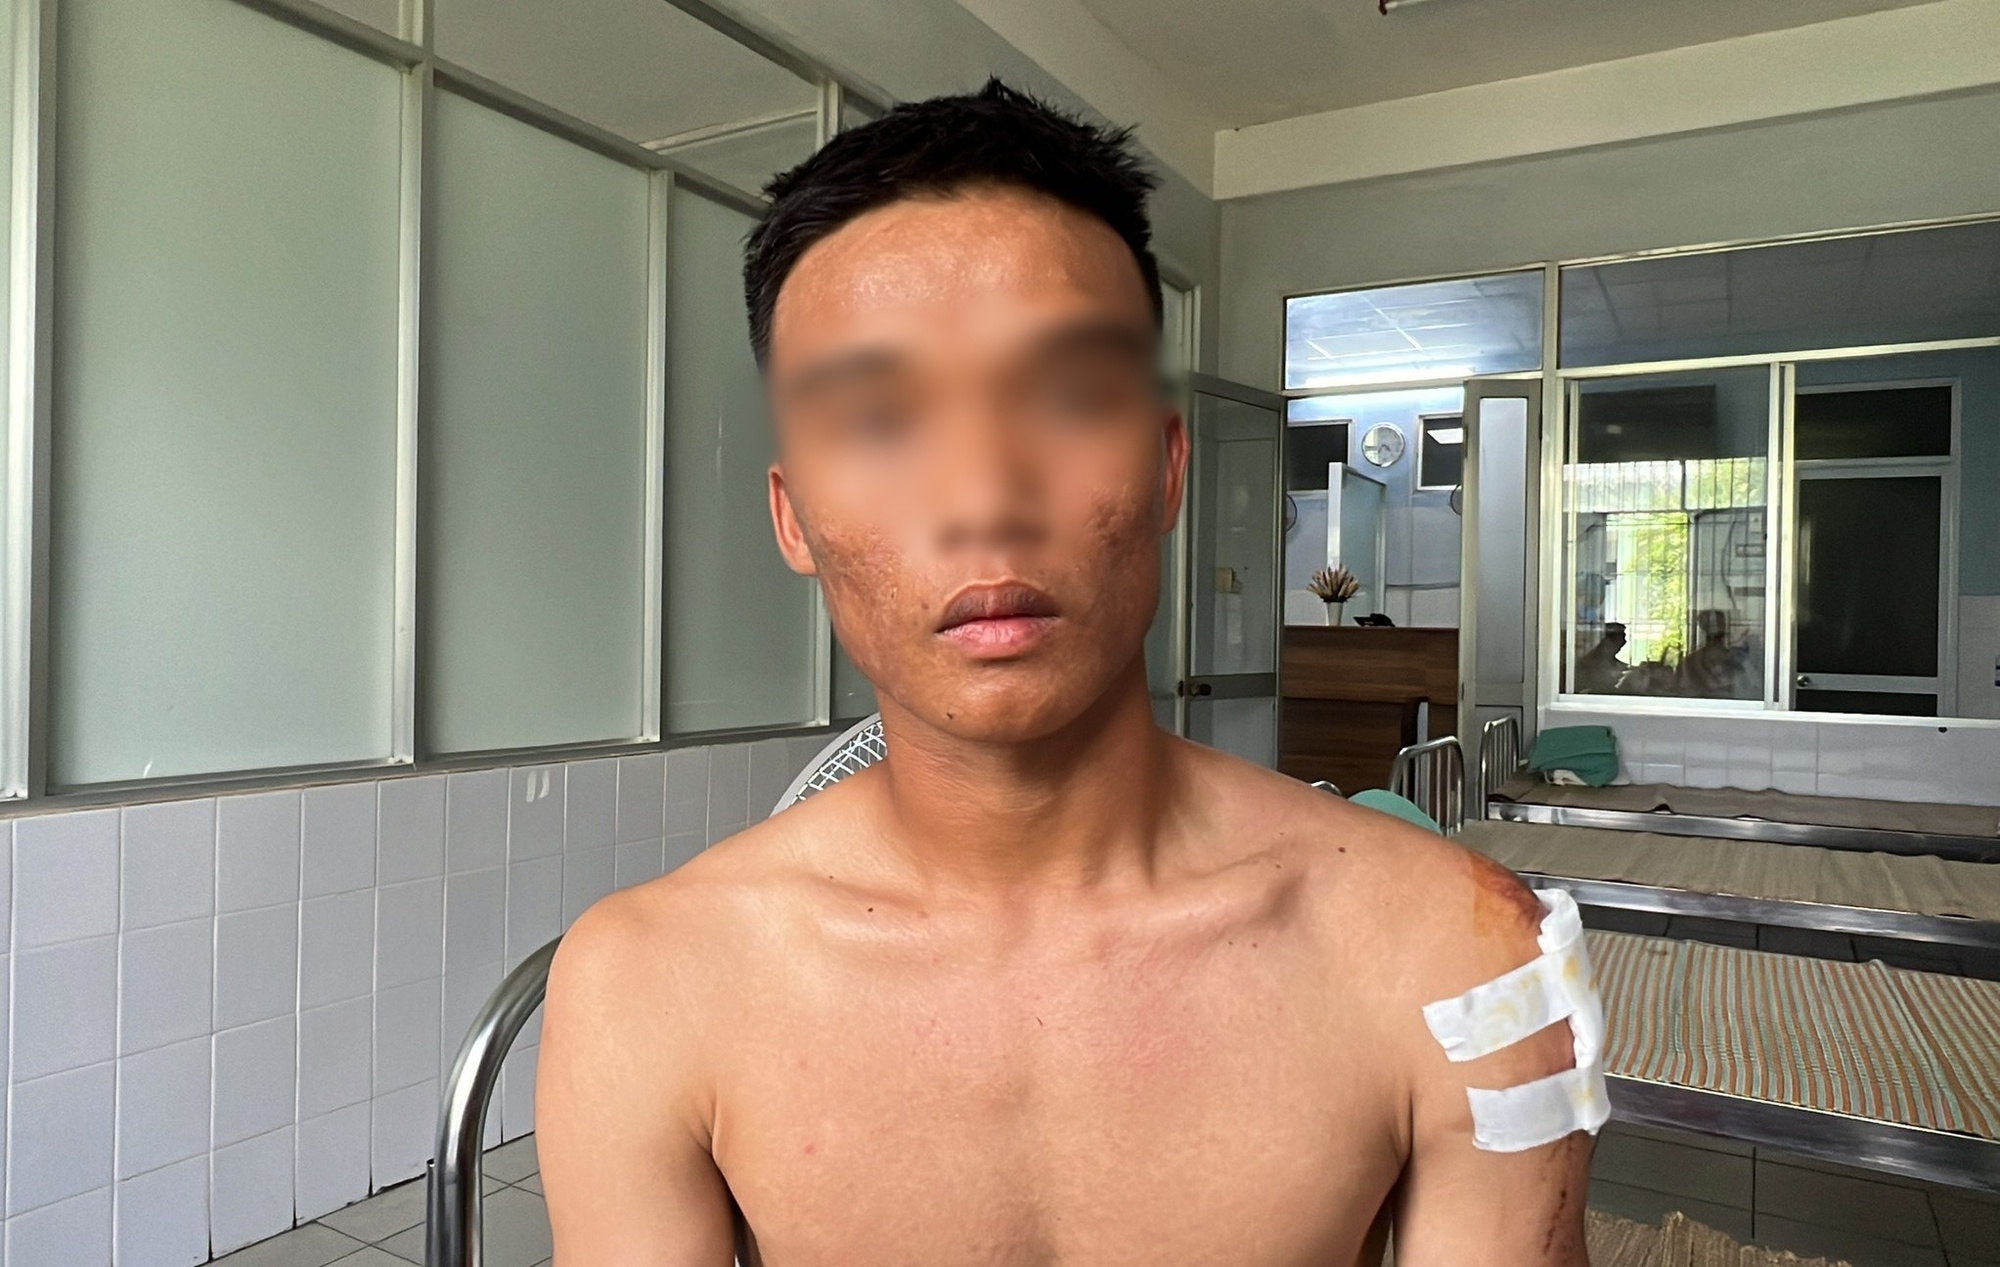 Cầu thủ Quảng Nam hoảng hồn kể lúc xe chở đội bóng mất lái, bị lật trên đèo khiến 4 người thương vong - Ảnh 3.